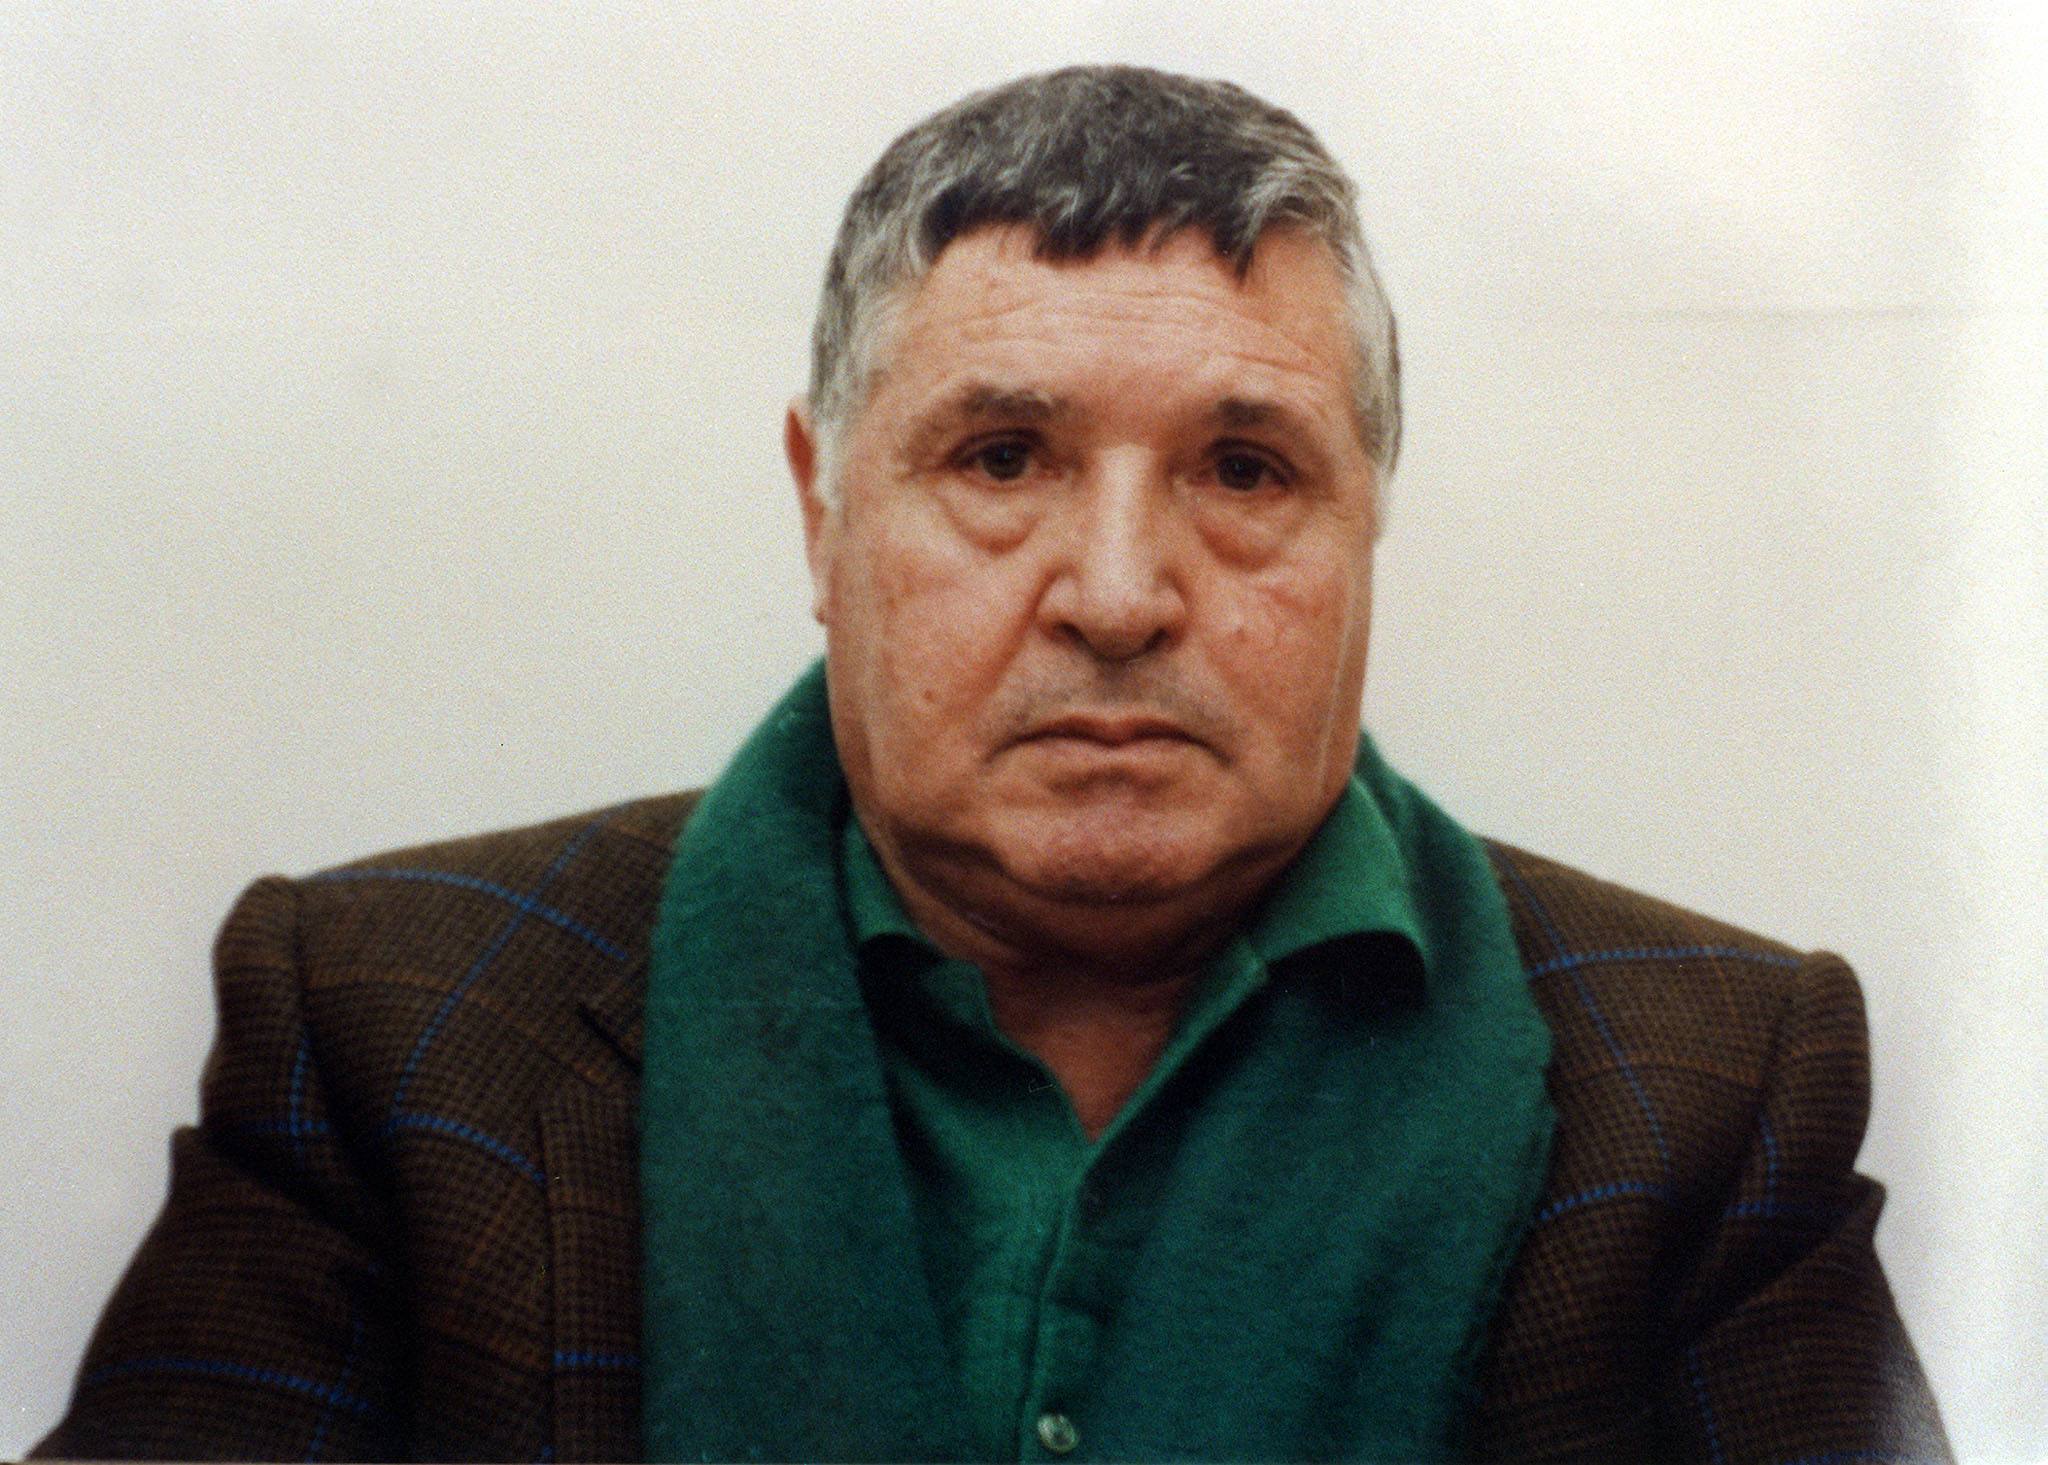 Mafia: morto Riina, boss che fece guerra a Stato / Speciale